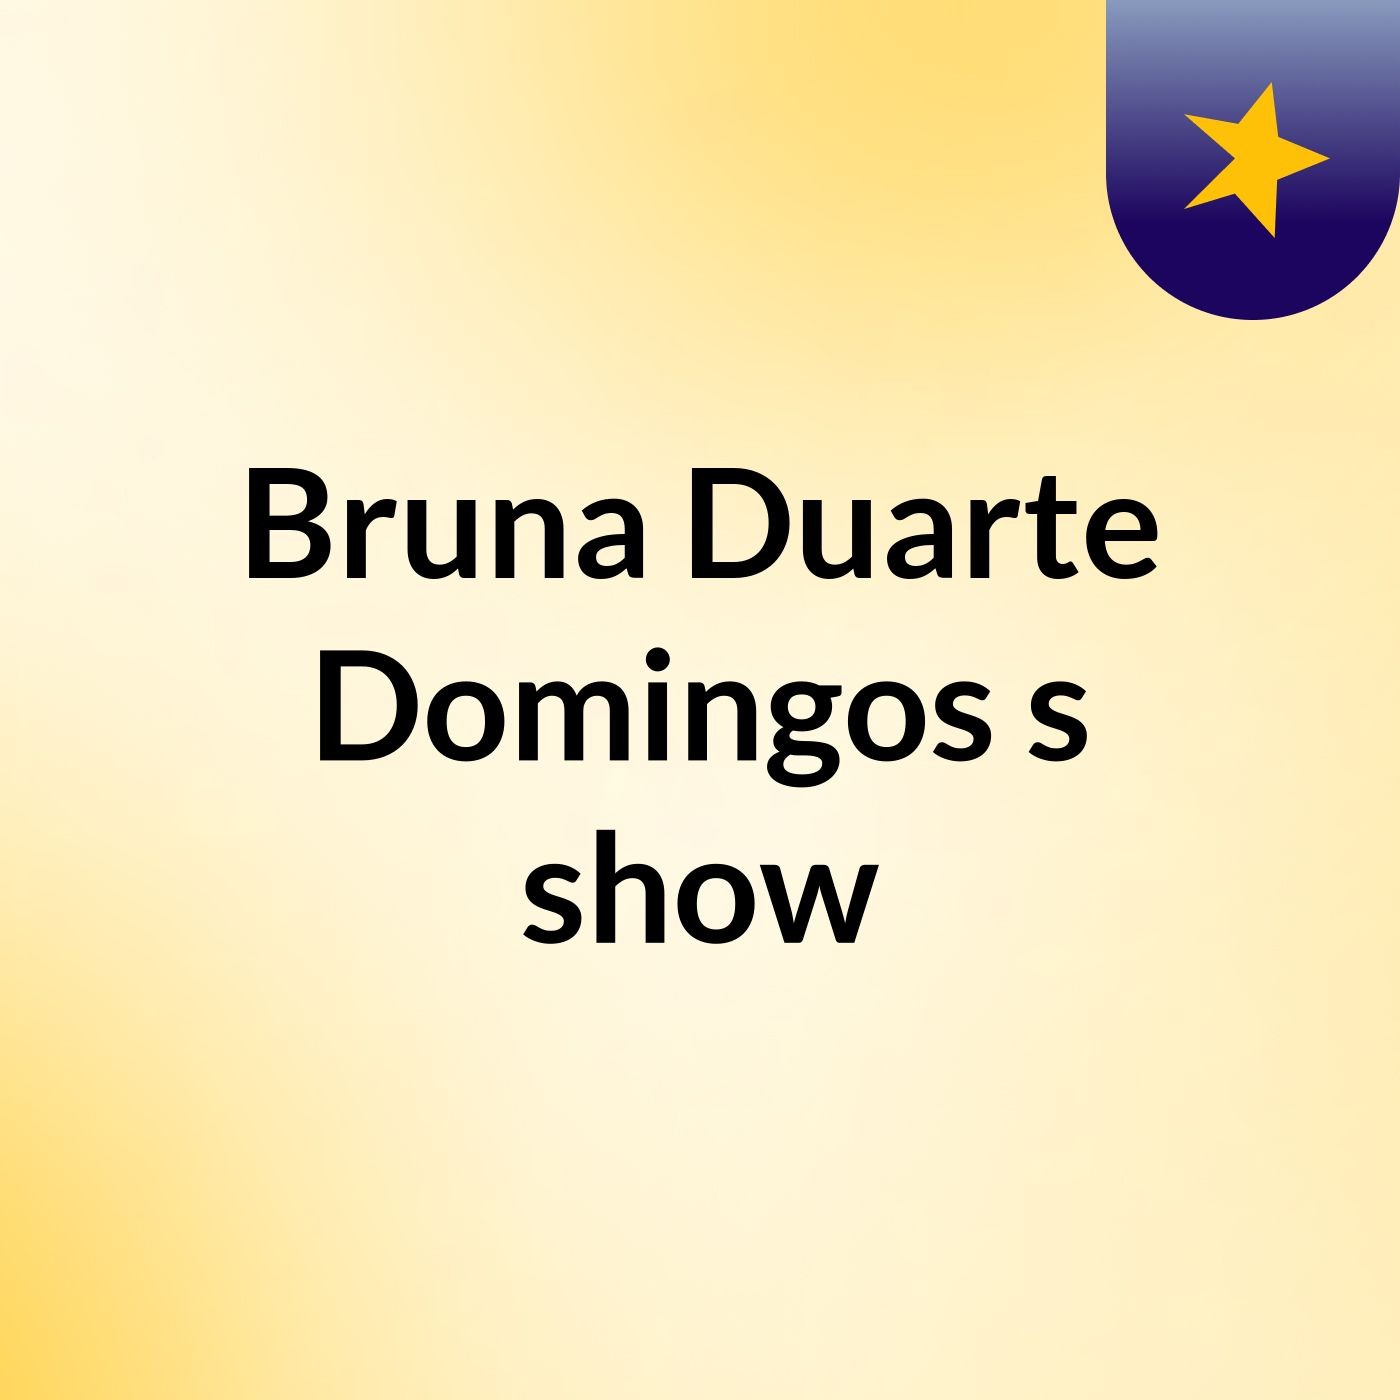 Bruna Duarte Domingos's show